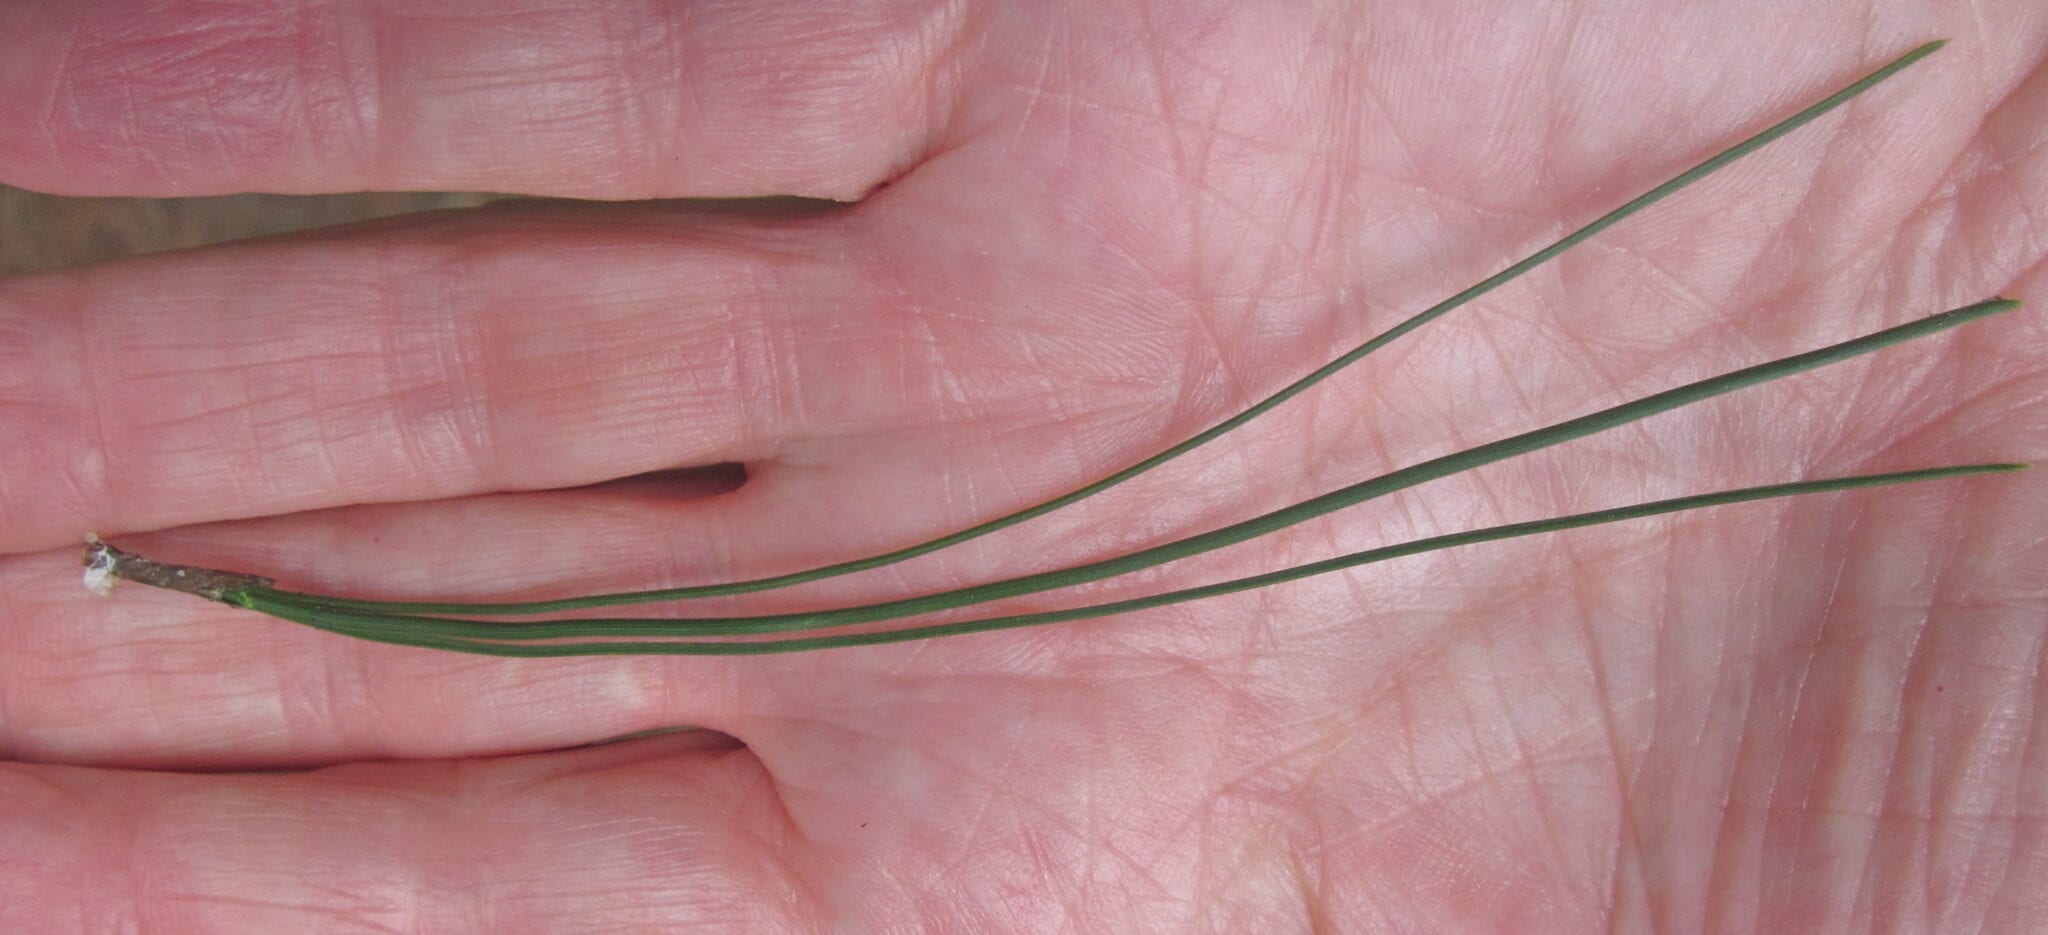 Monterey Pine needles